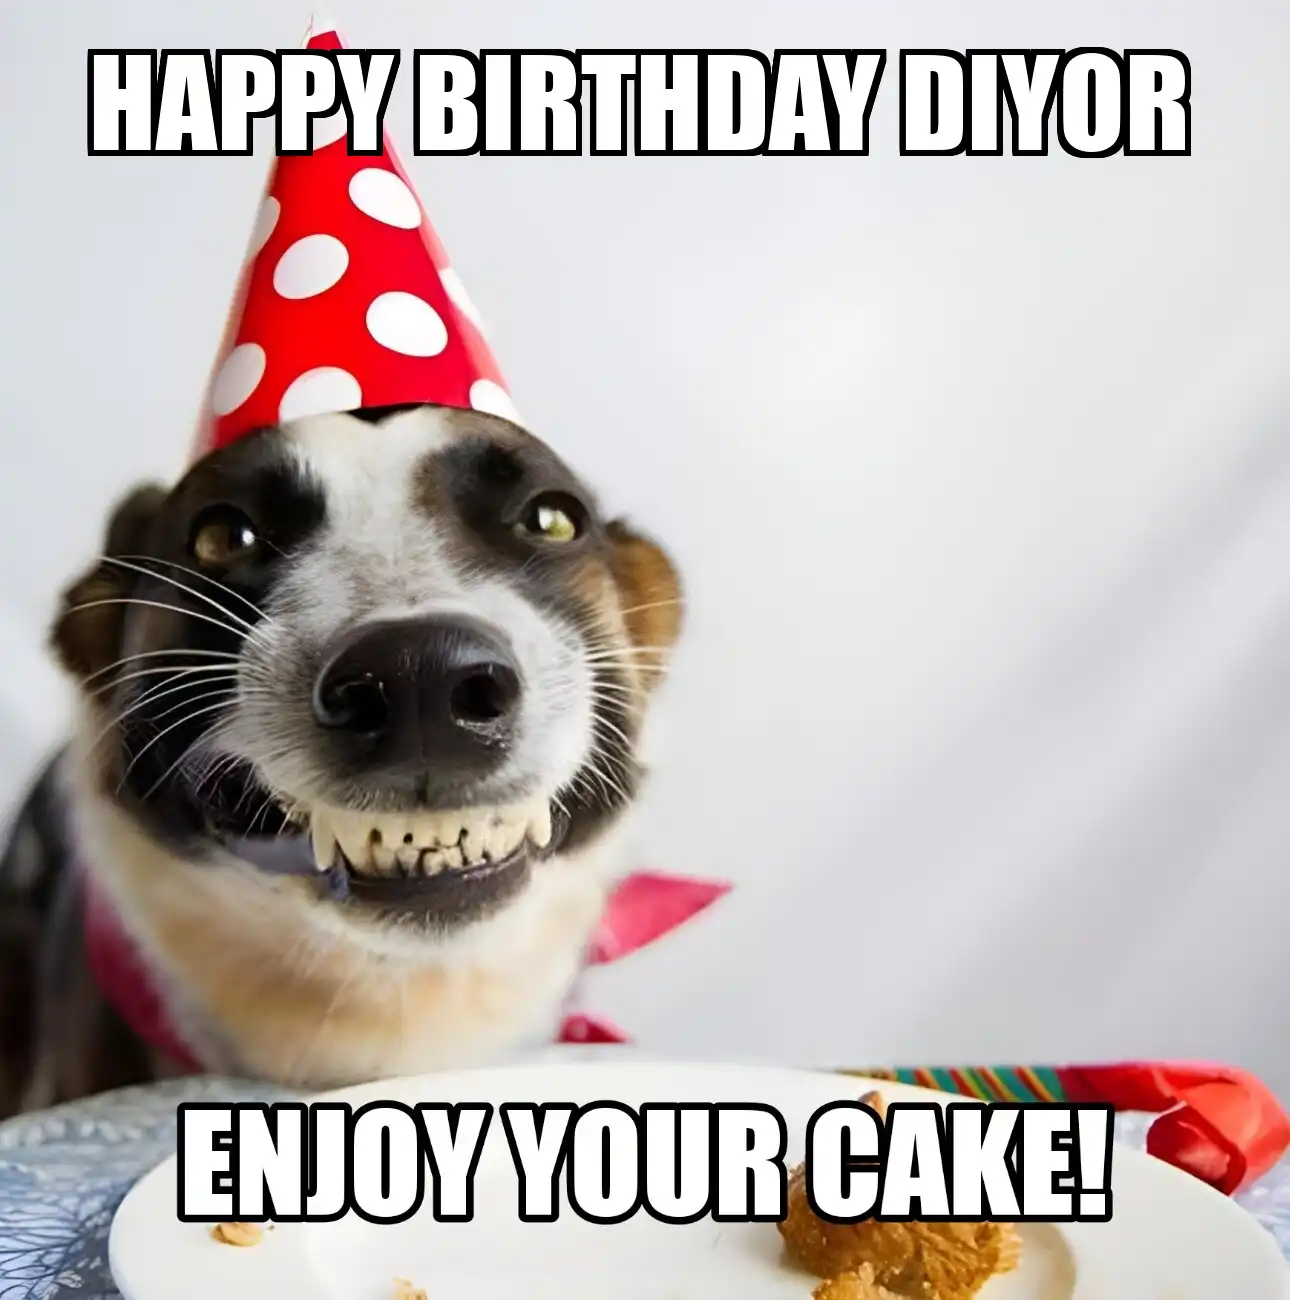 Happy Birthday Diyor Enjoy Your Cake Dog Meme